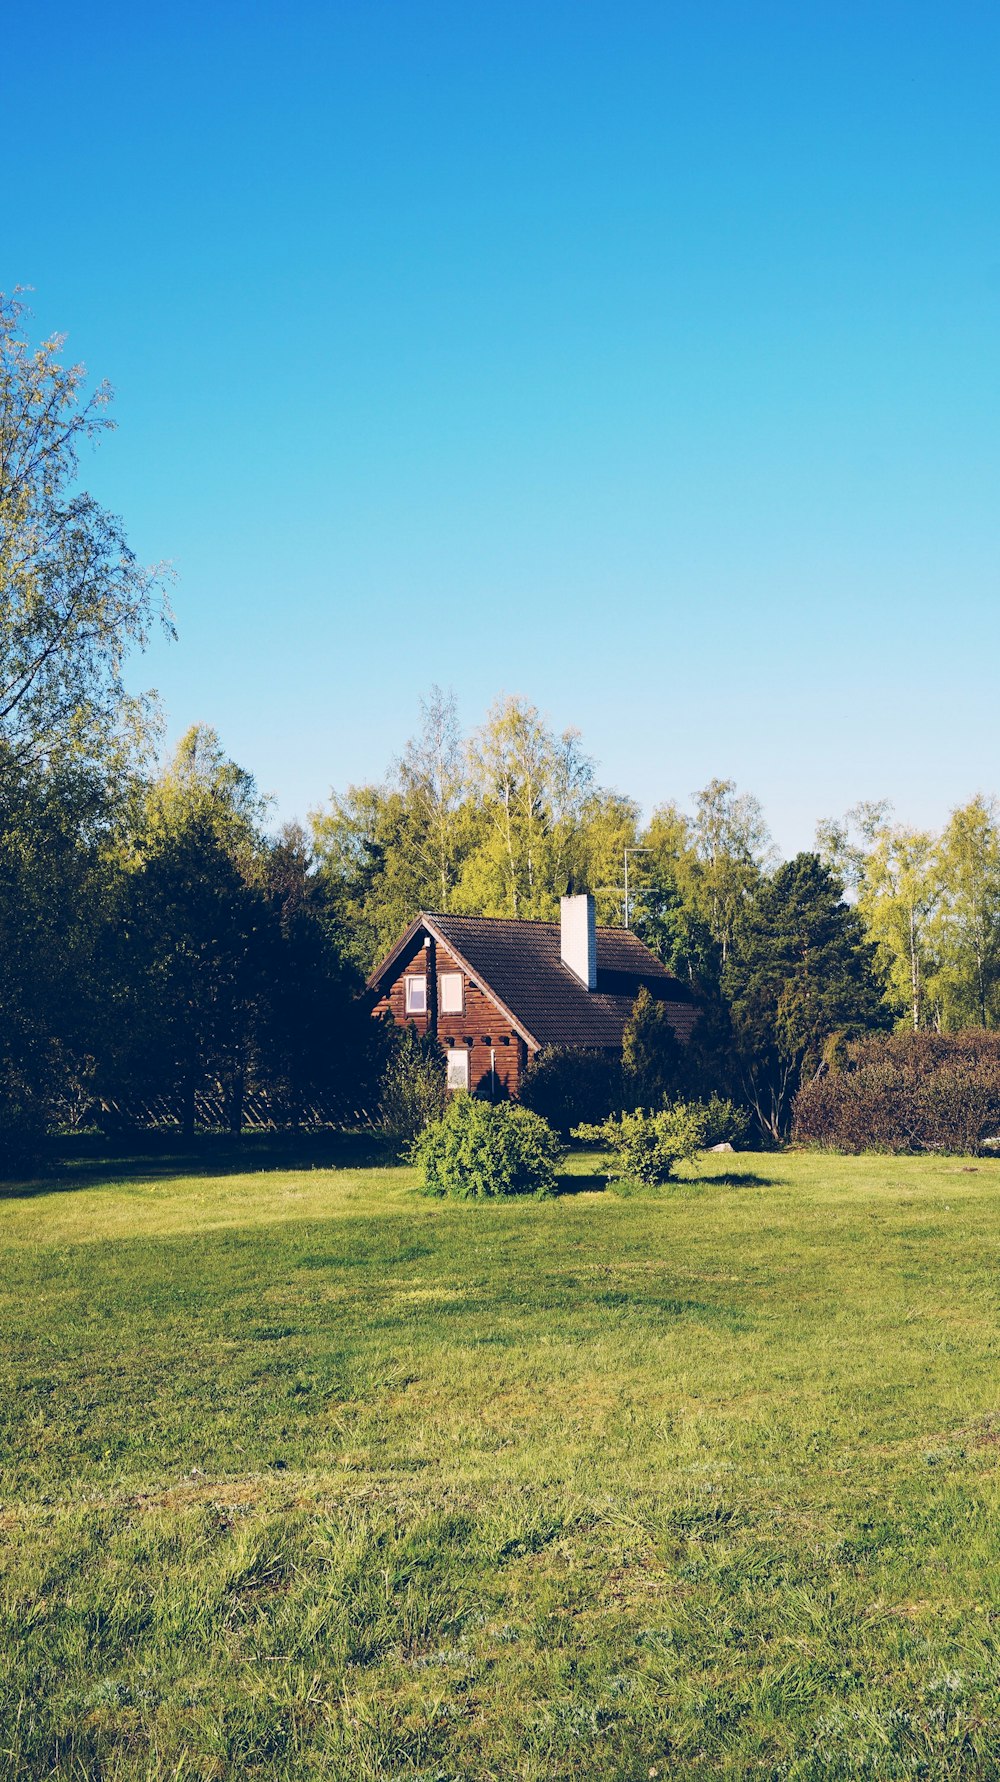 Braunes Holzhaus auf grünem Grasfeld in der Nähe von grünen Bäumen unter blauem Himmel tagsüber